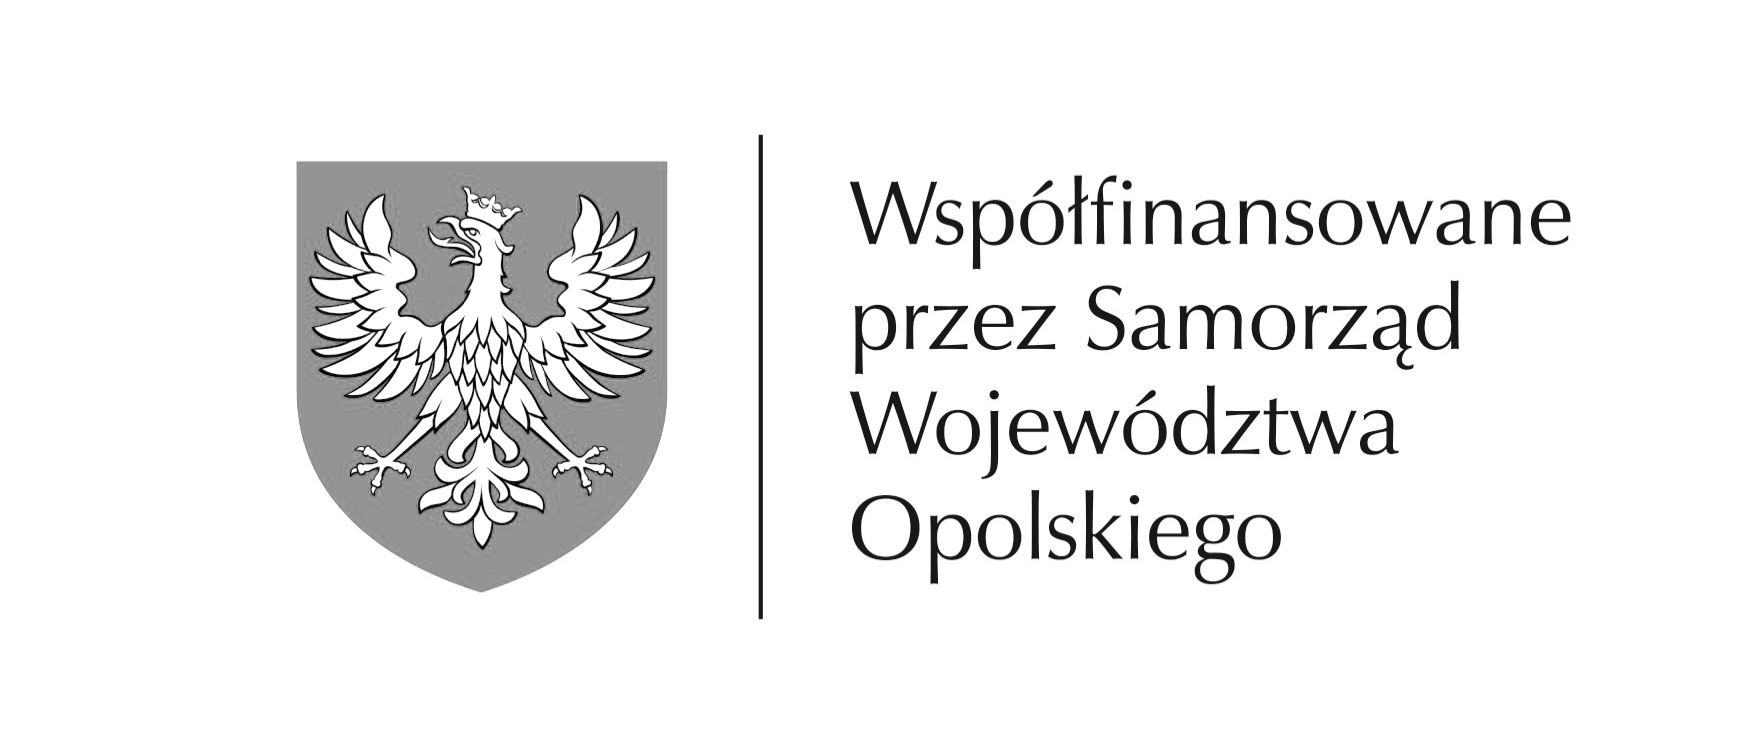 biwWspolfinansowane-przez-Samorzad-Wojewodztwa-Opolskiego-wersja-pozioma